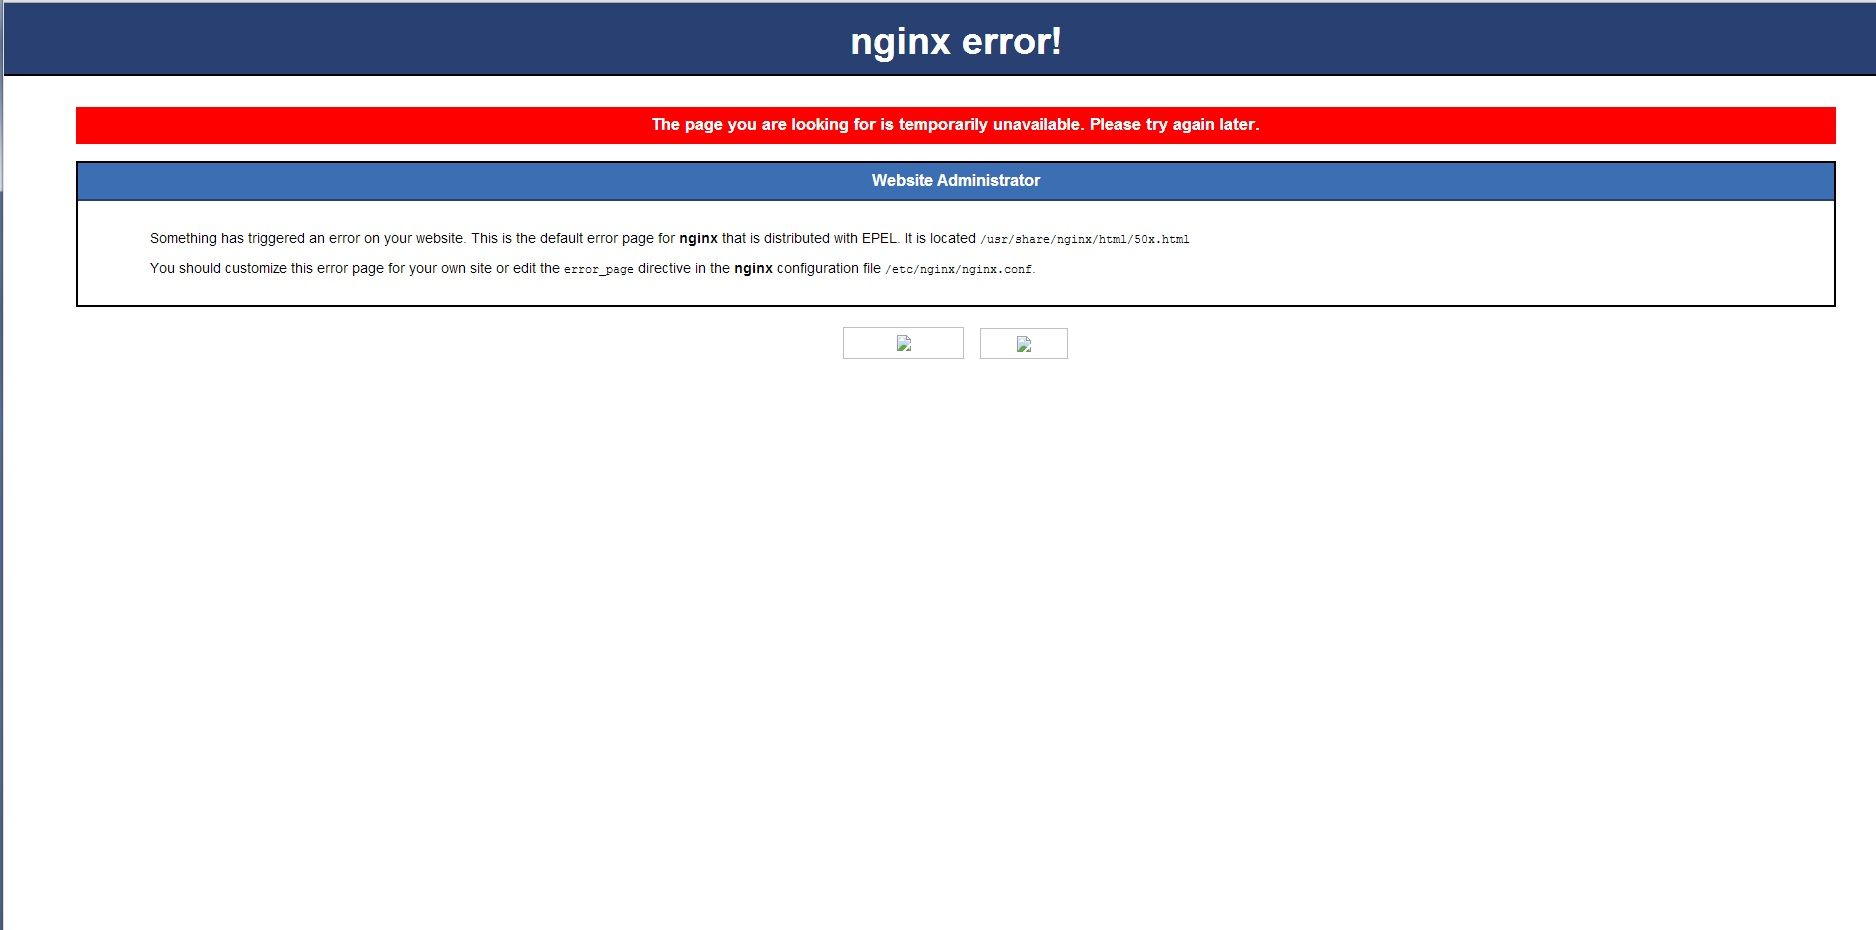 [Image: AEU86 AE86 - Report website problems here!]